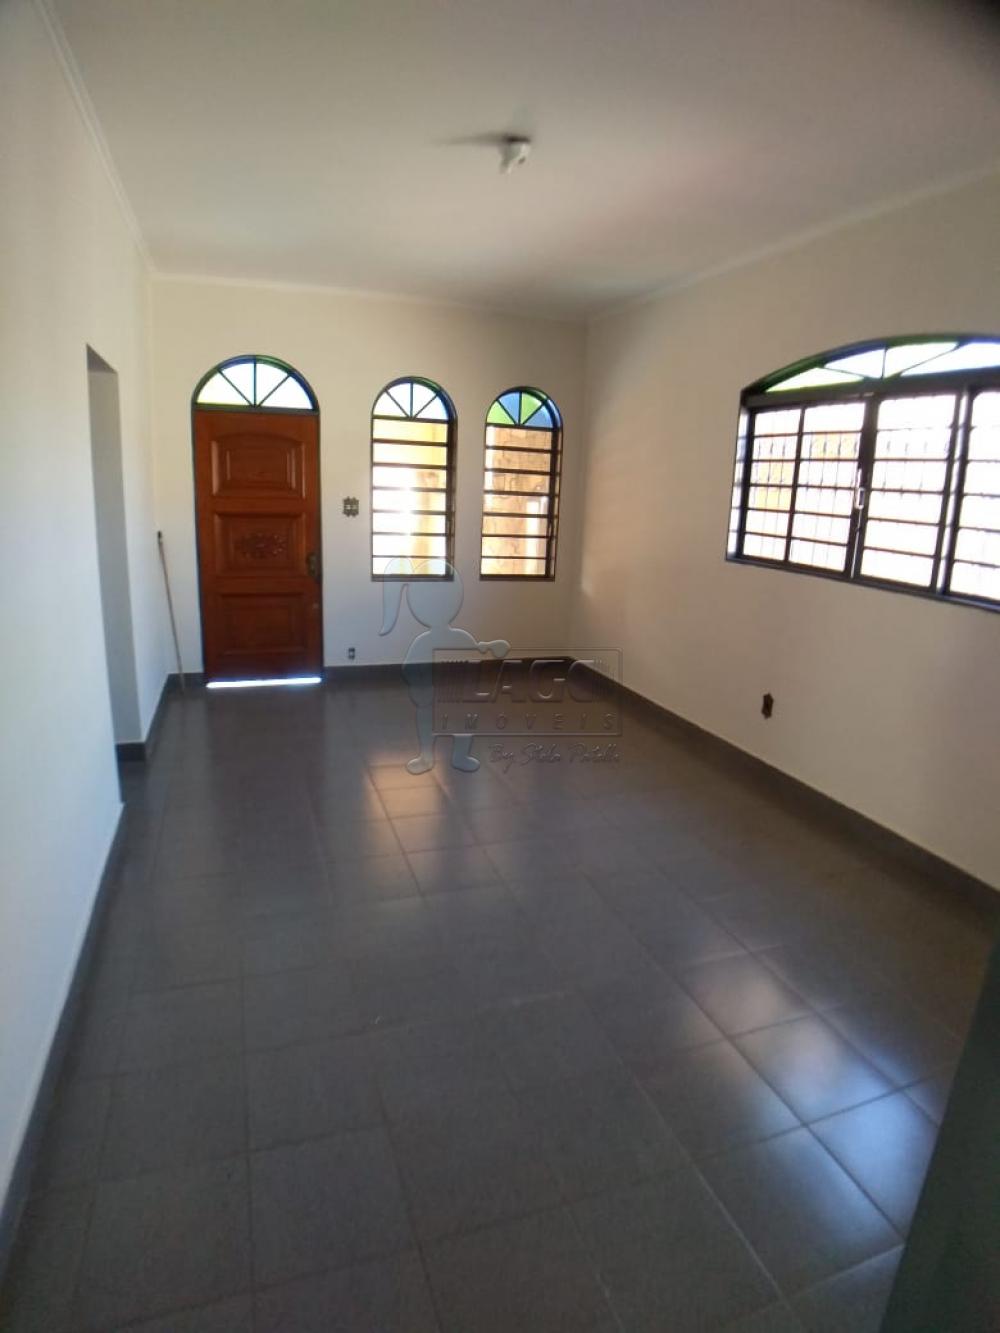 Alugar Casas / Padrão em Ribeirão Preto R$ 1.200,00 - Foto 3